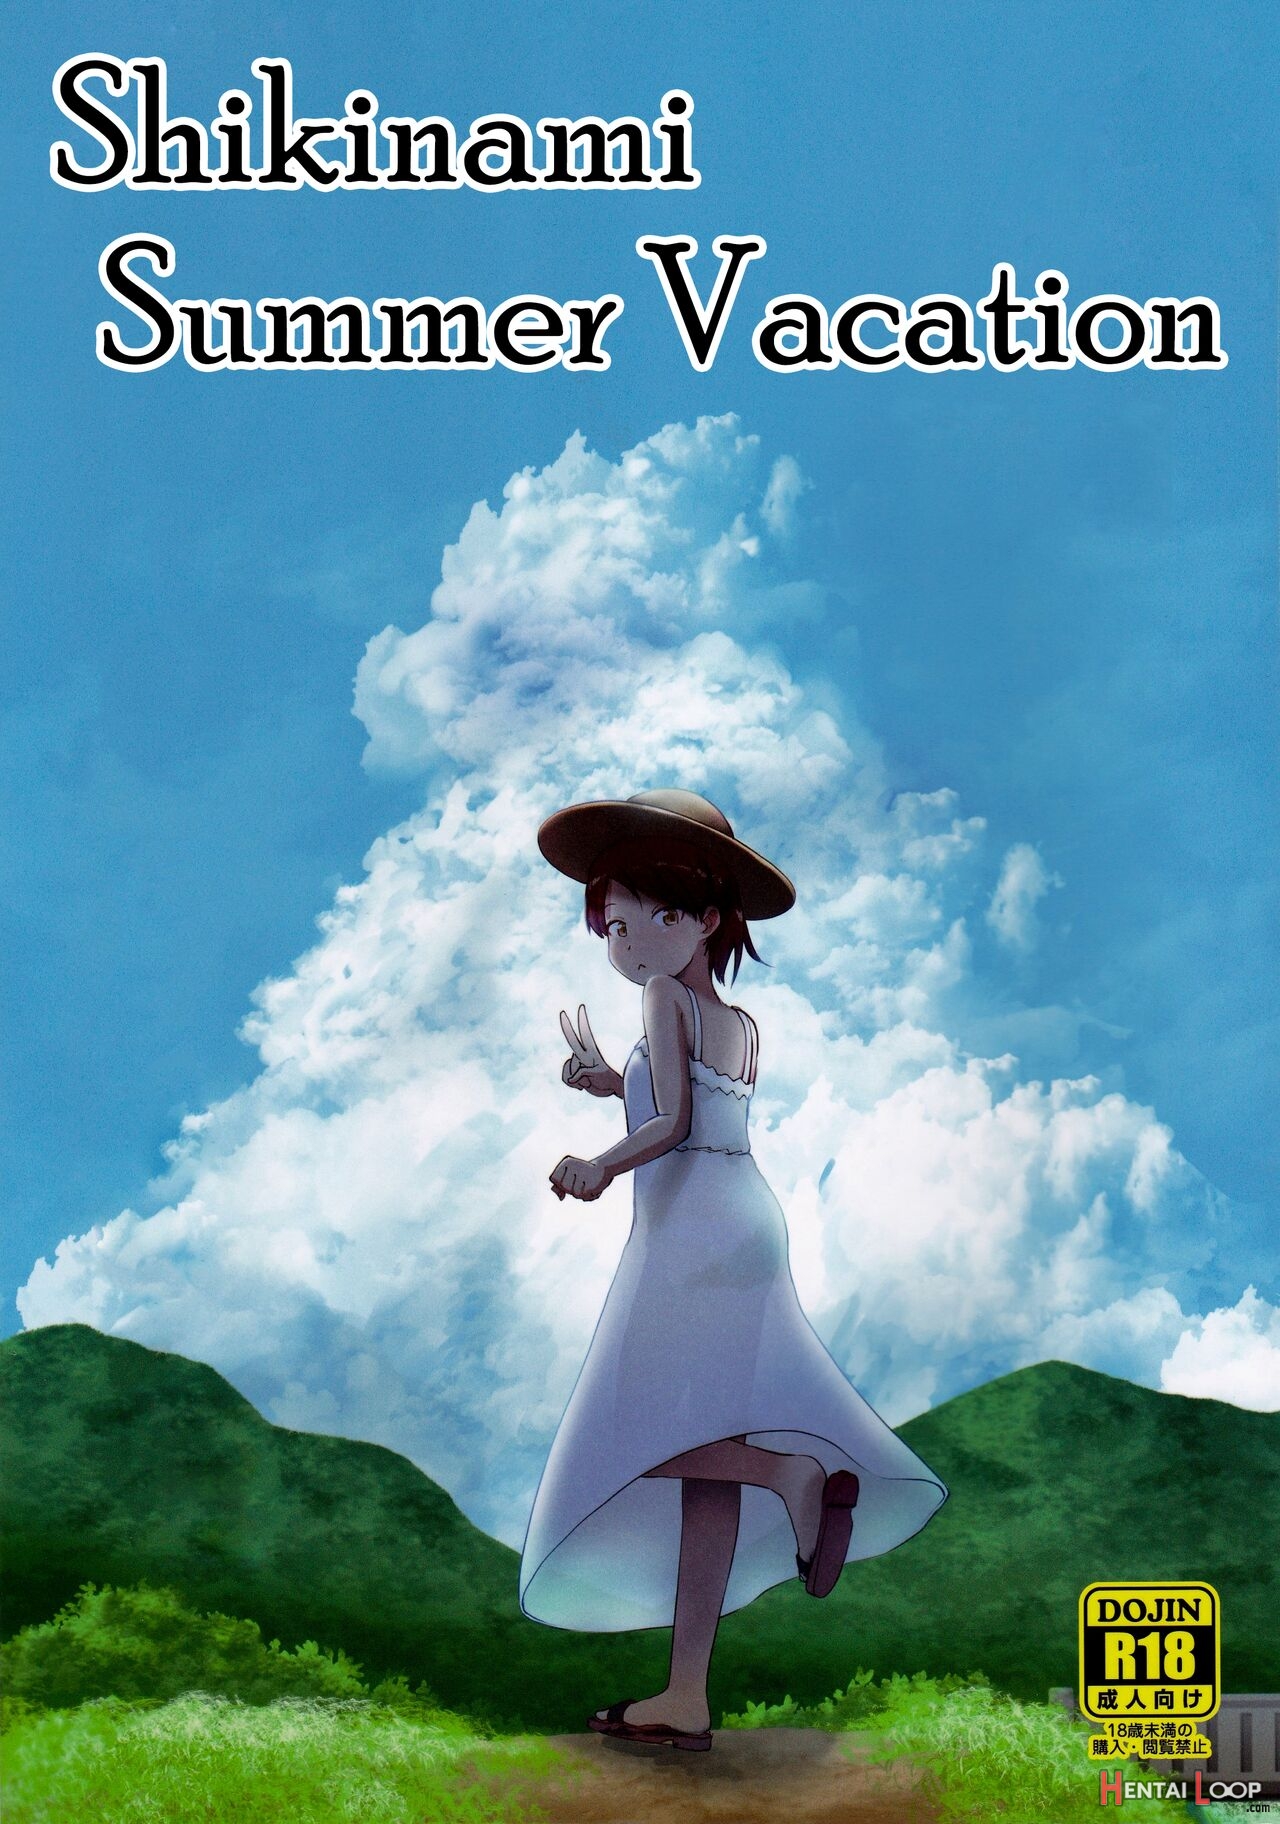 Shikinami Summer Vacation page 1